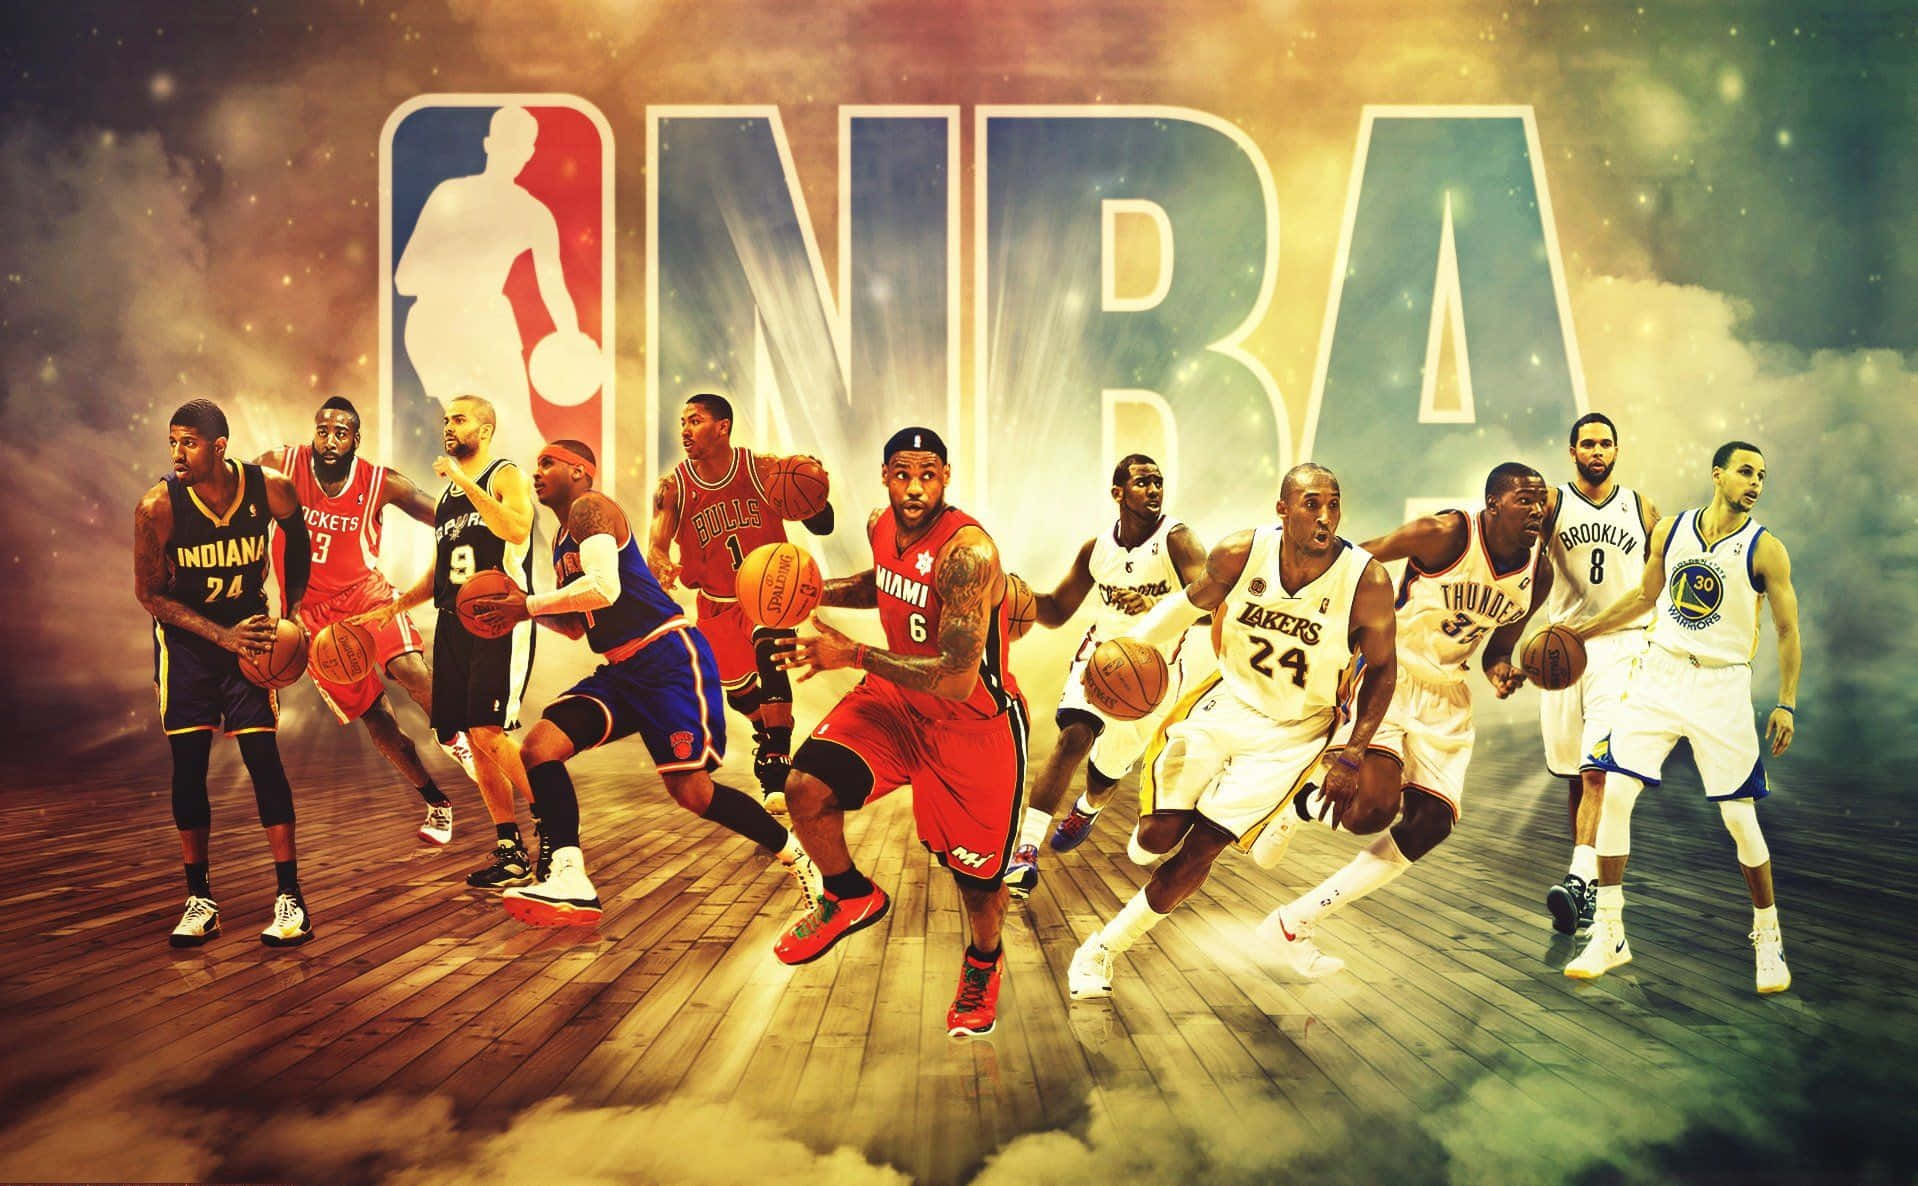 Farverignba-promoverende Basketball-baggrund.